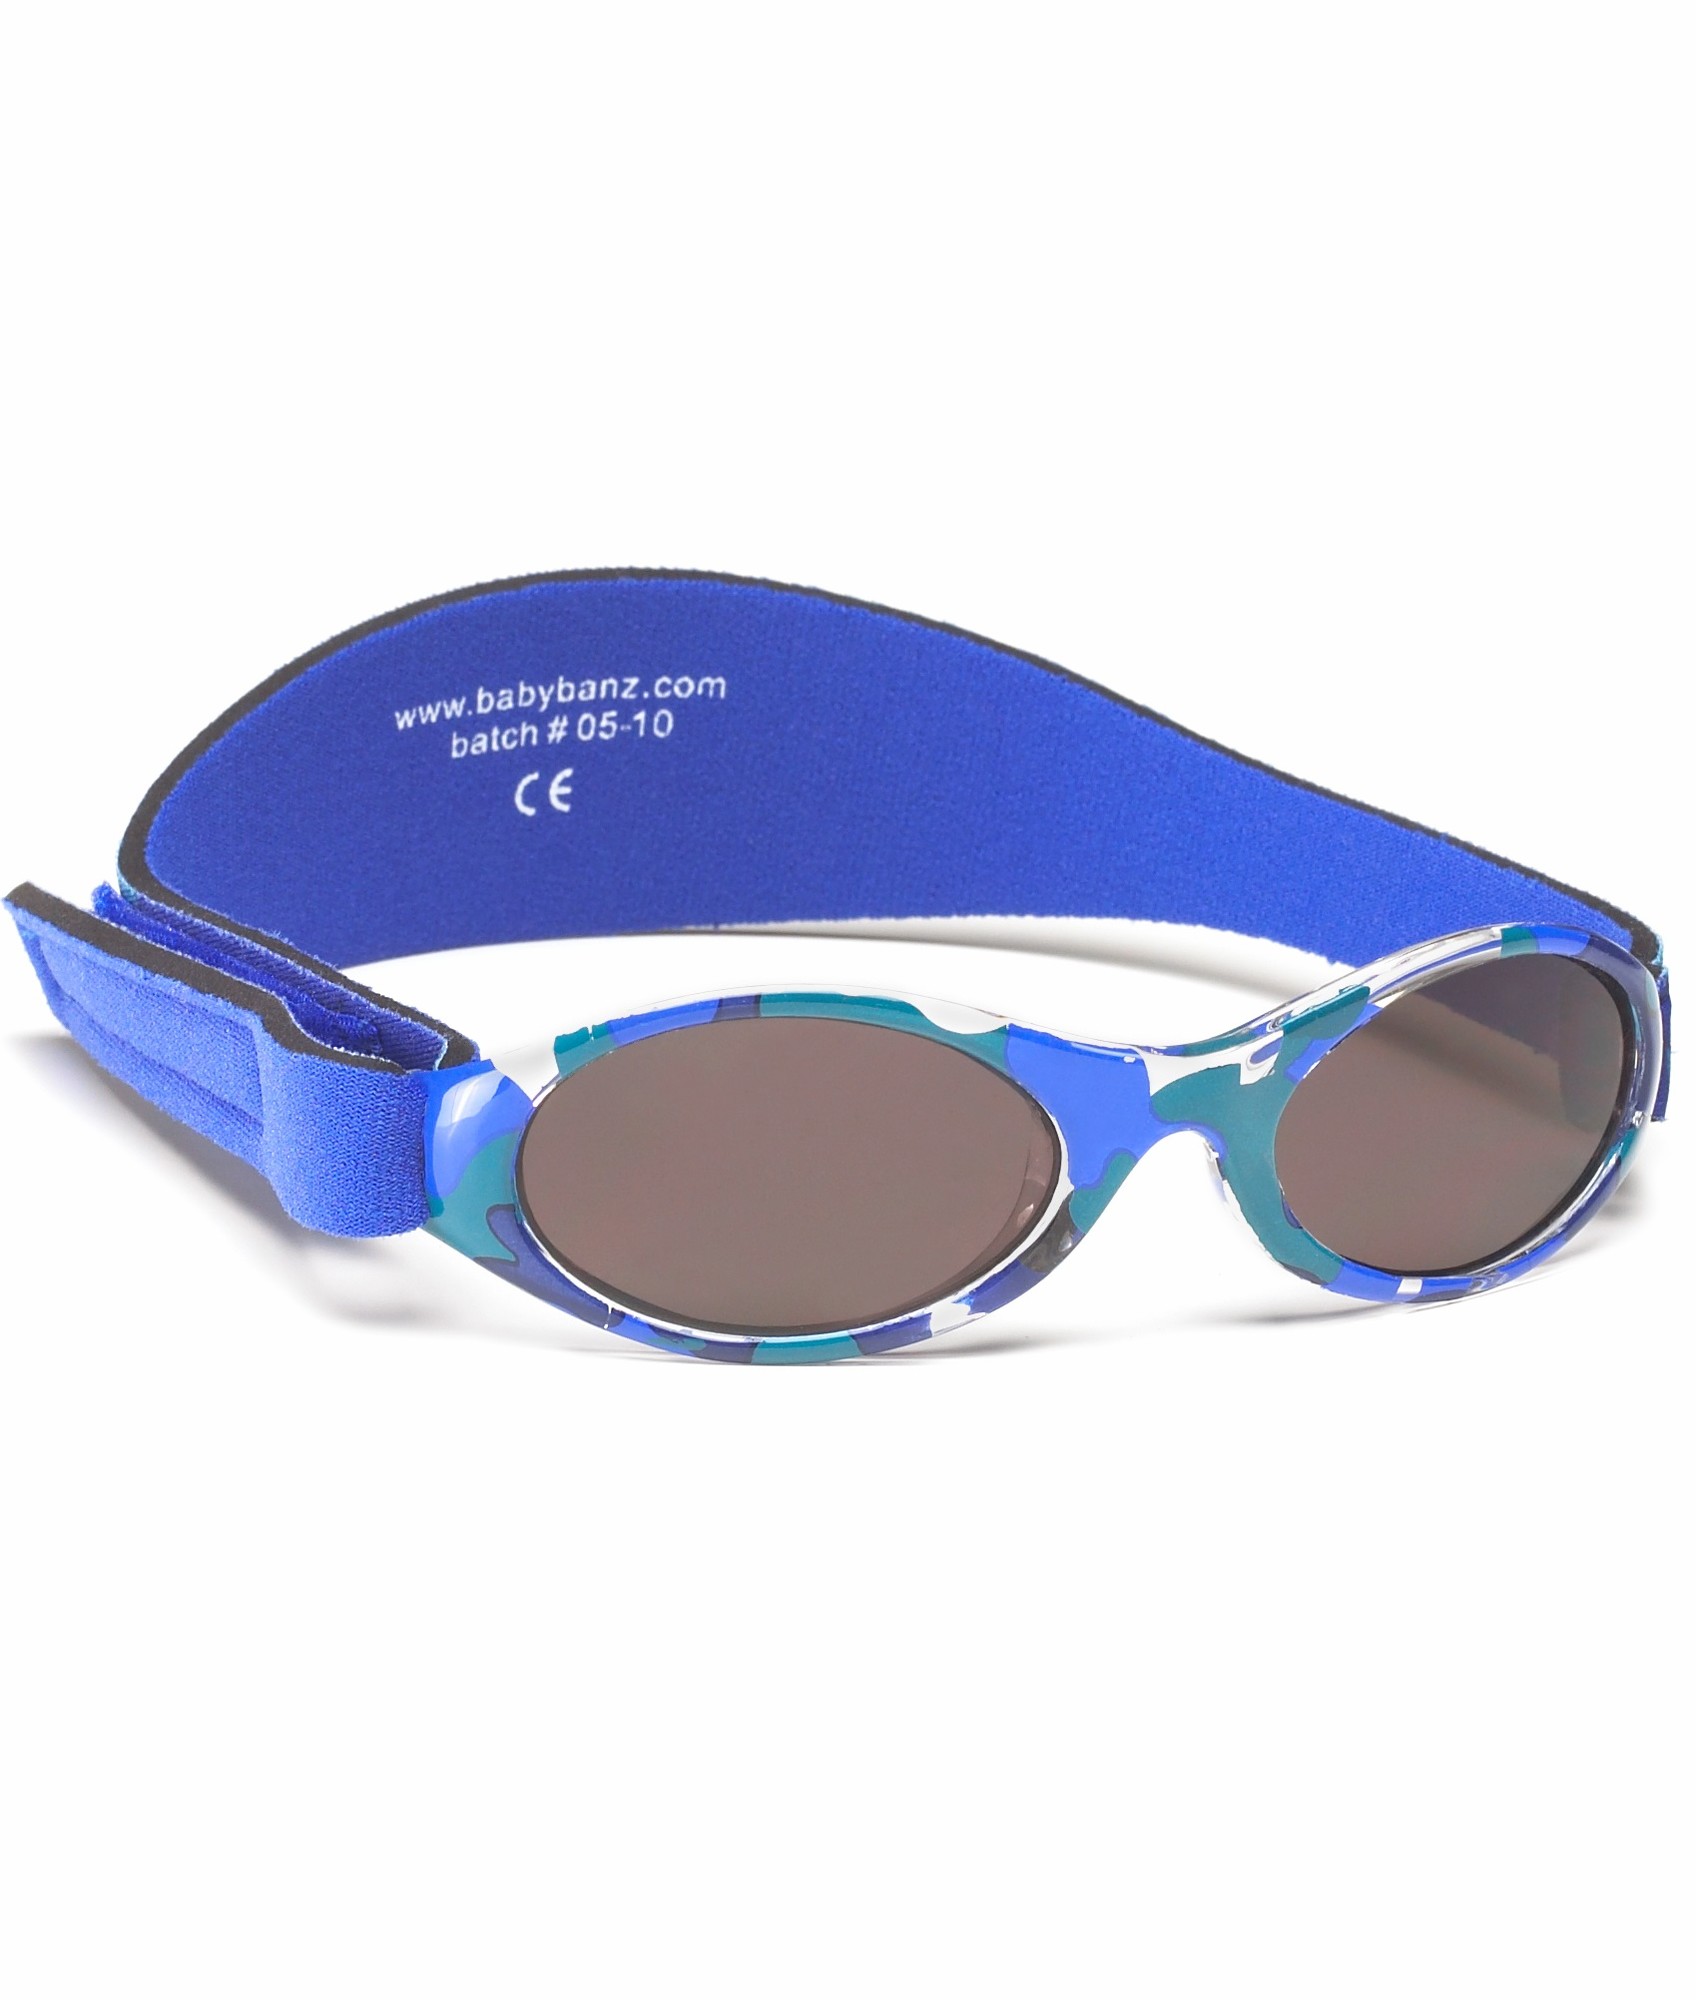 Banz - UV-Sonnenbrille für Kinder - Bubzee - Blau Camo